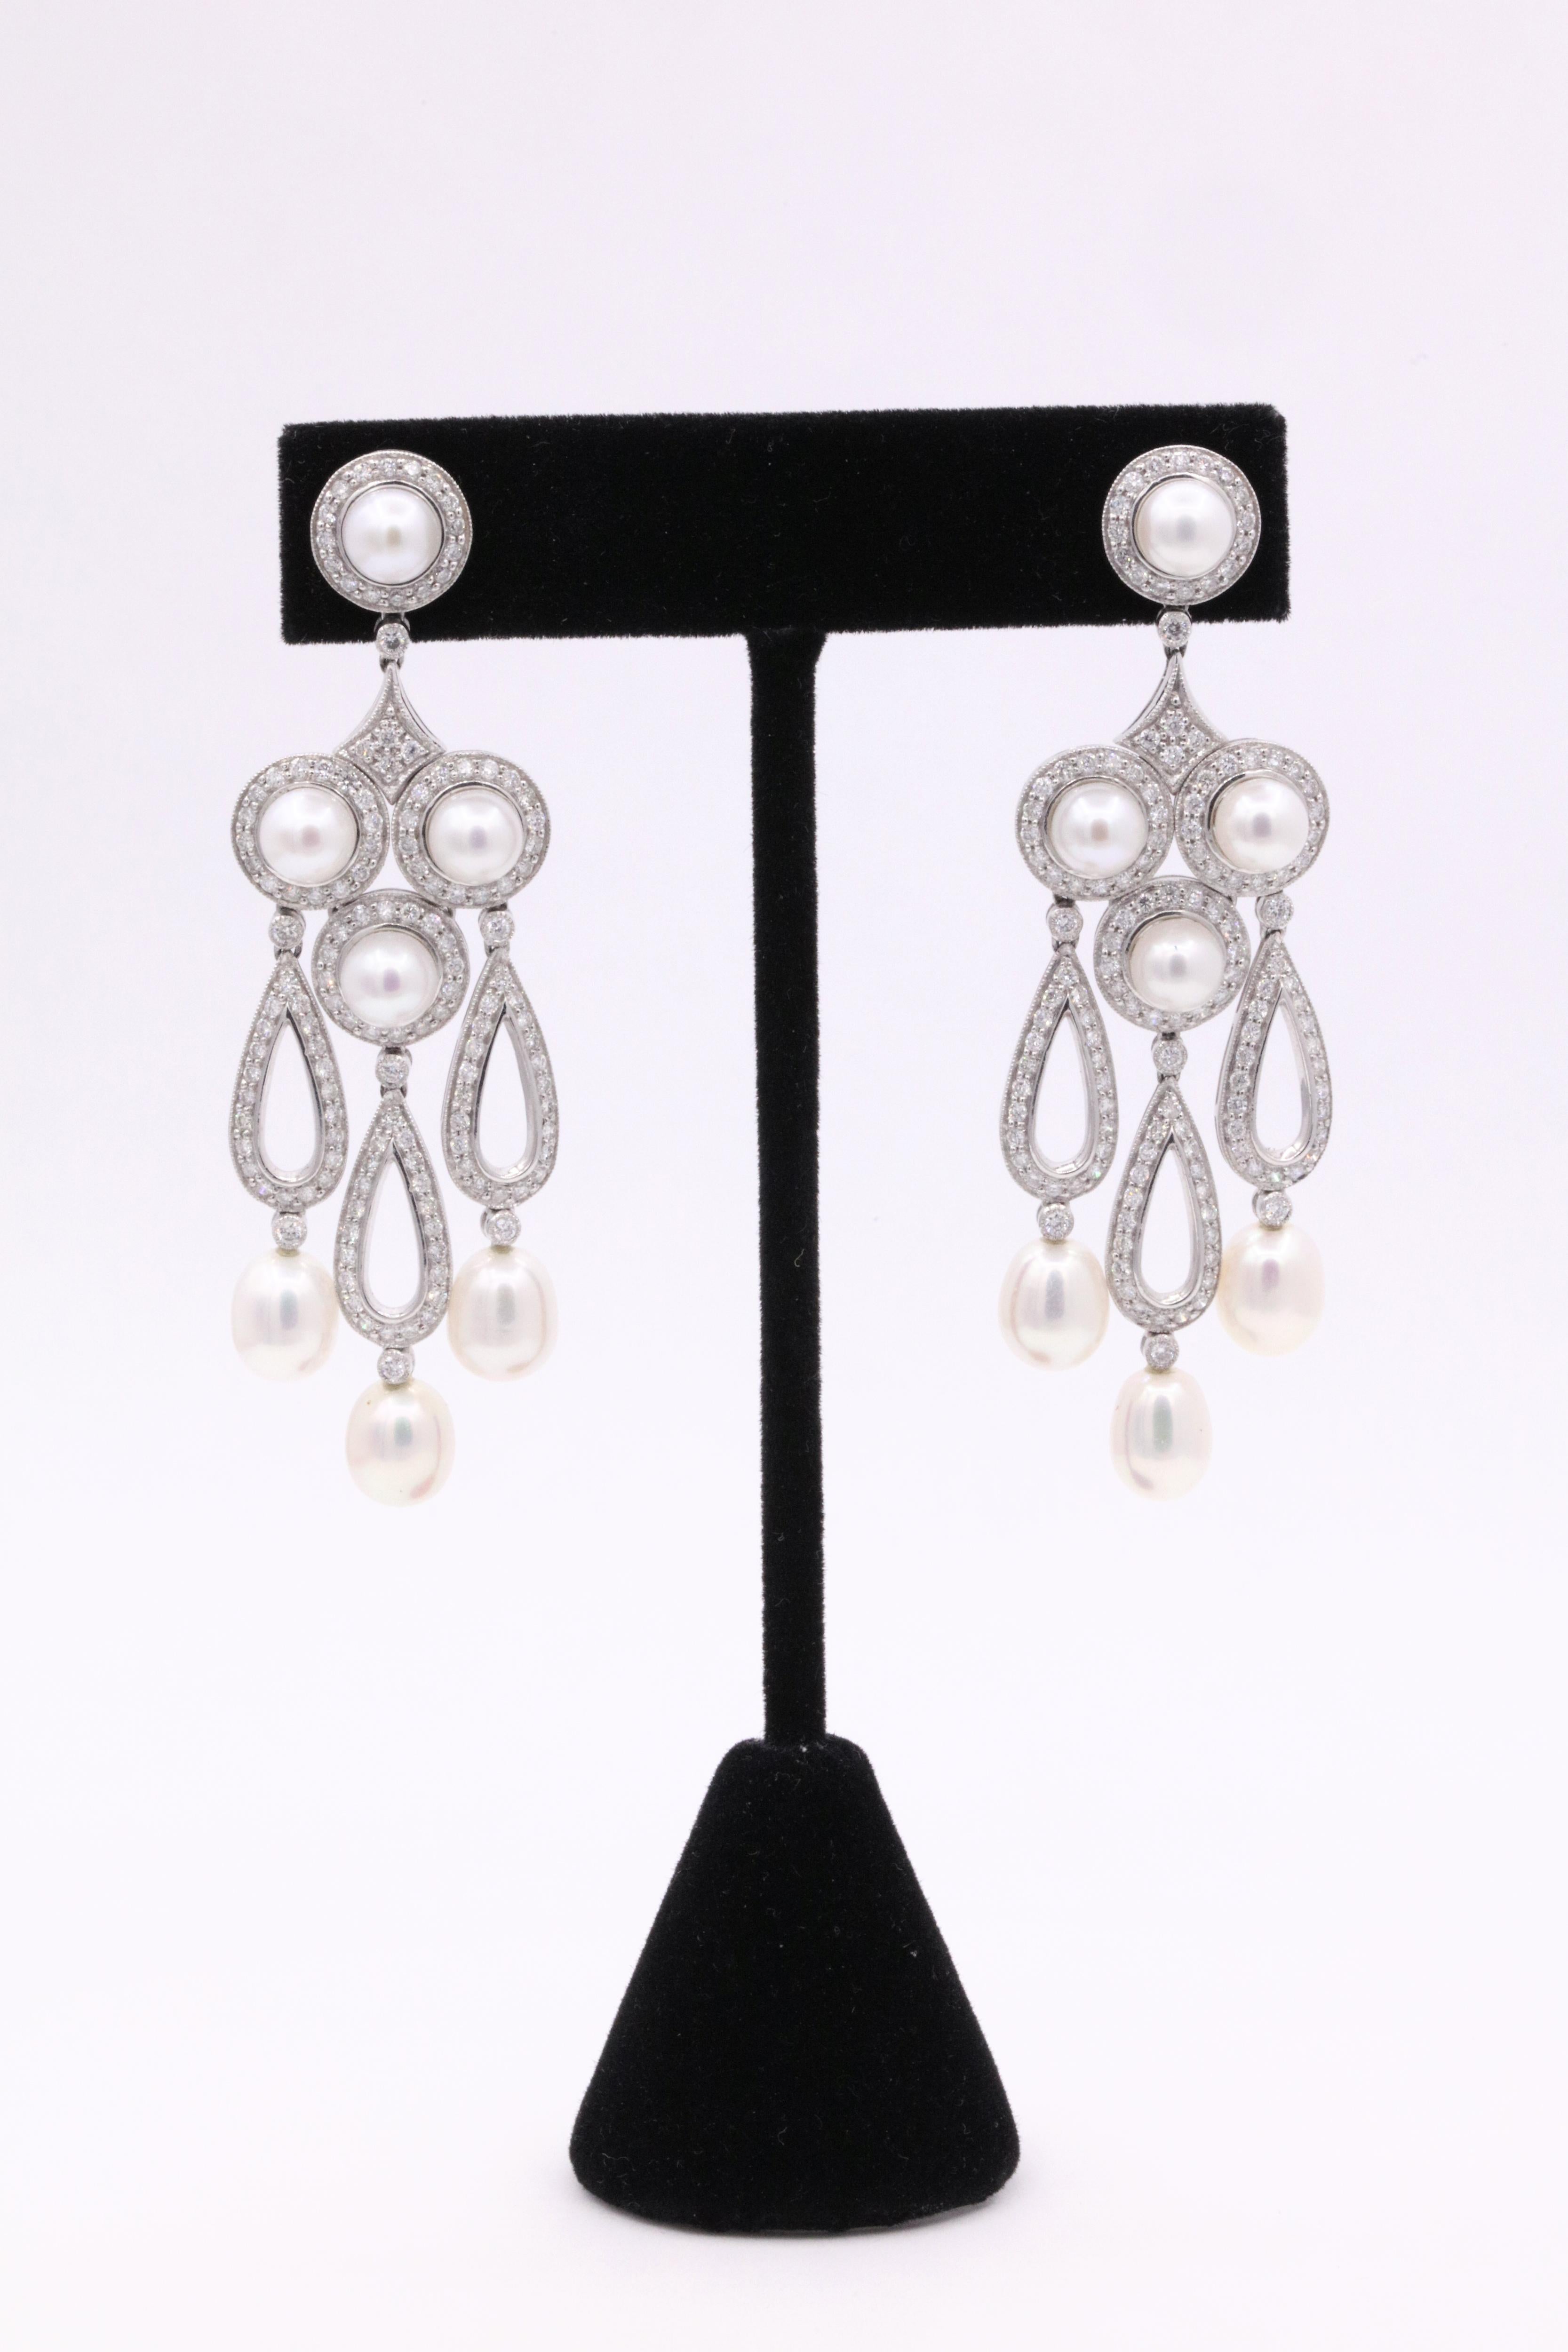 Von der Art déco inspirierte Ohrringe mit runden Brillanten von 3,13 Karat und einem Hauch von runden und ovalen Perlen. 
Farbe G
Klarheit SI
Ein echter Hingucker!